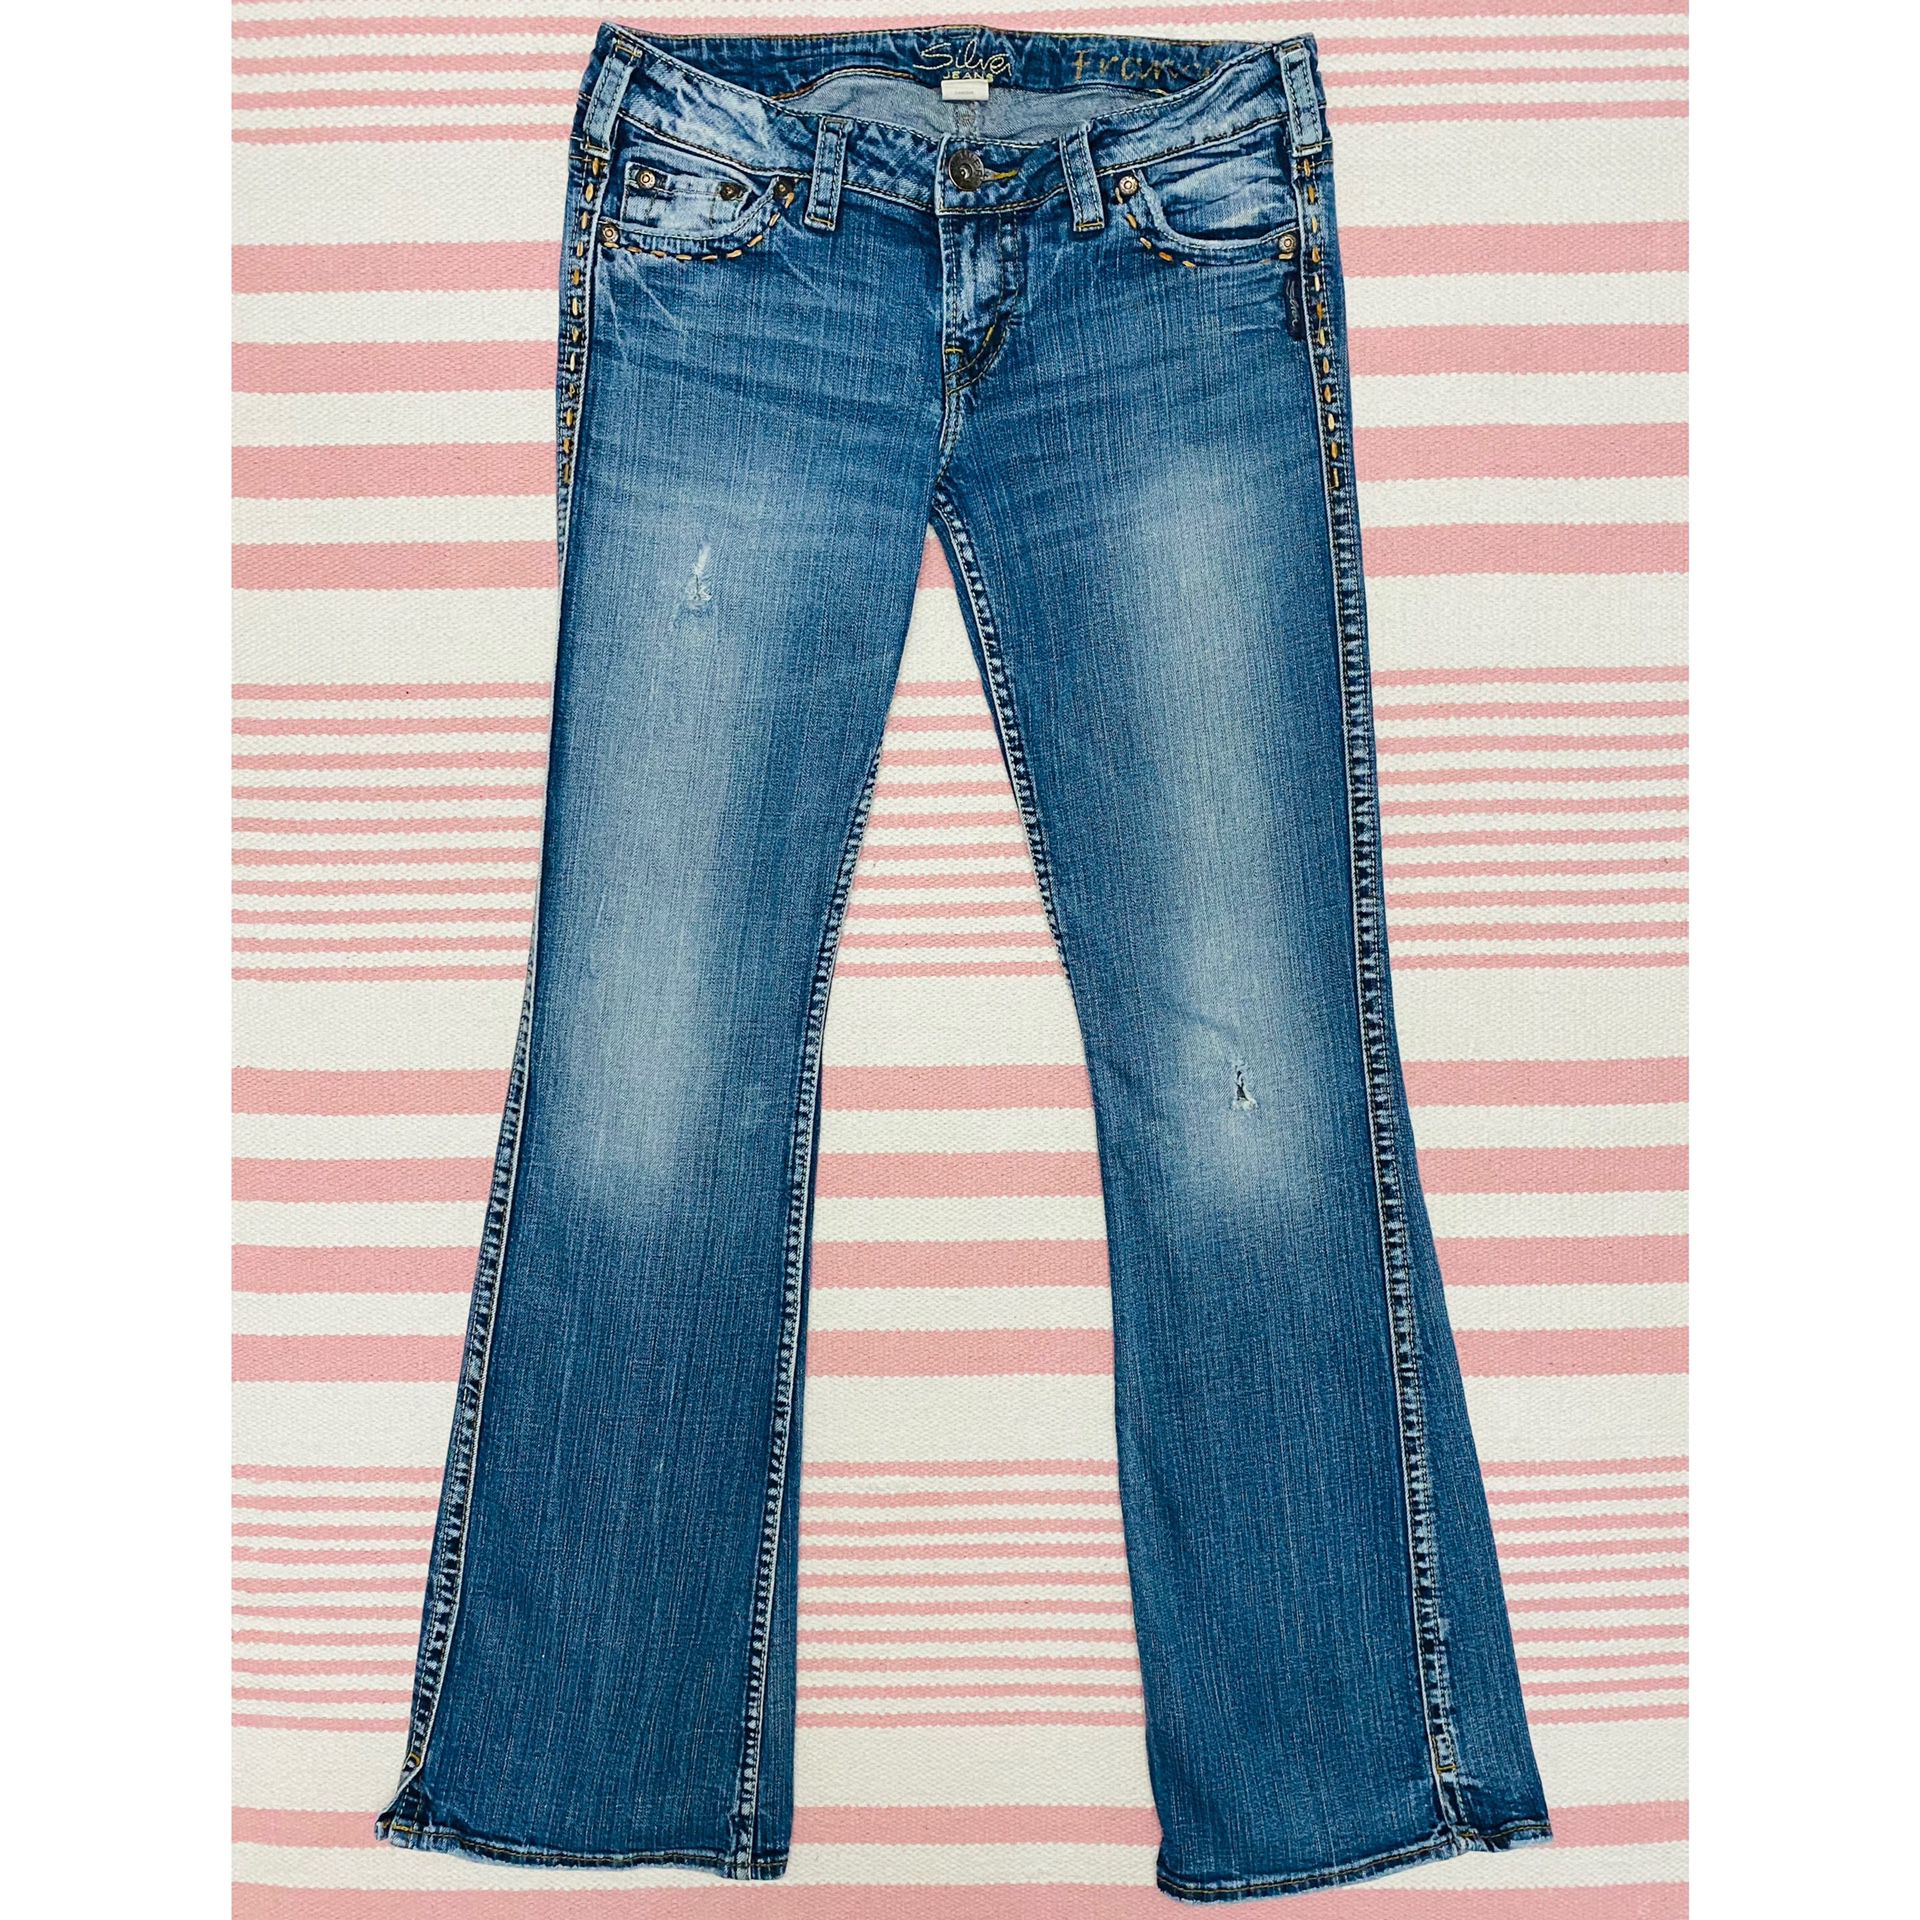 Silver Jeans Frances Denim Blue Jean Flare Pants Distressed Med Wash Size 29